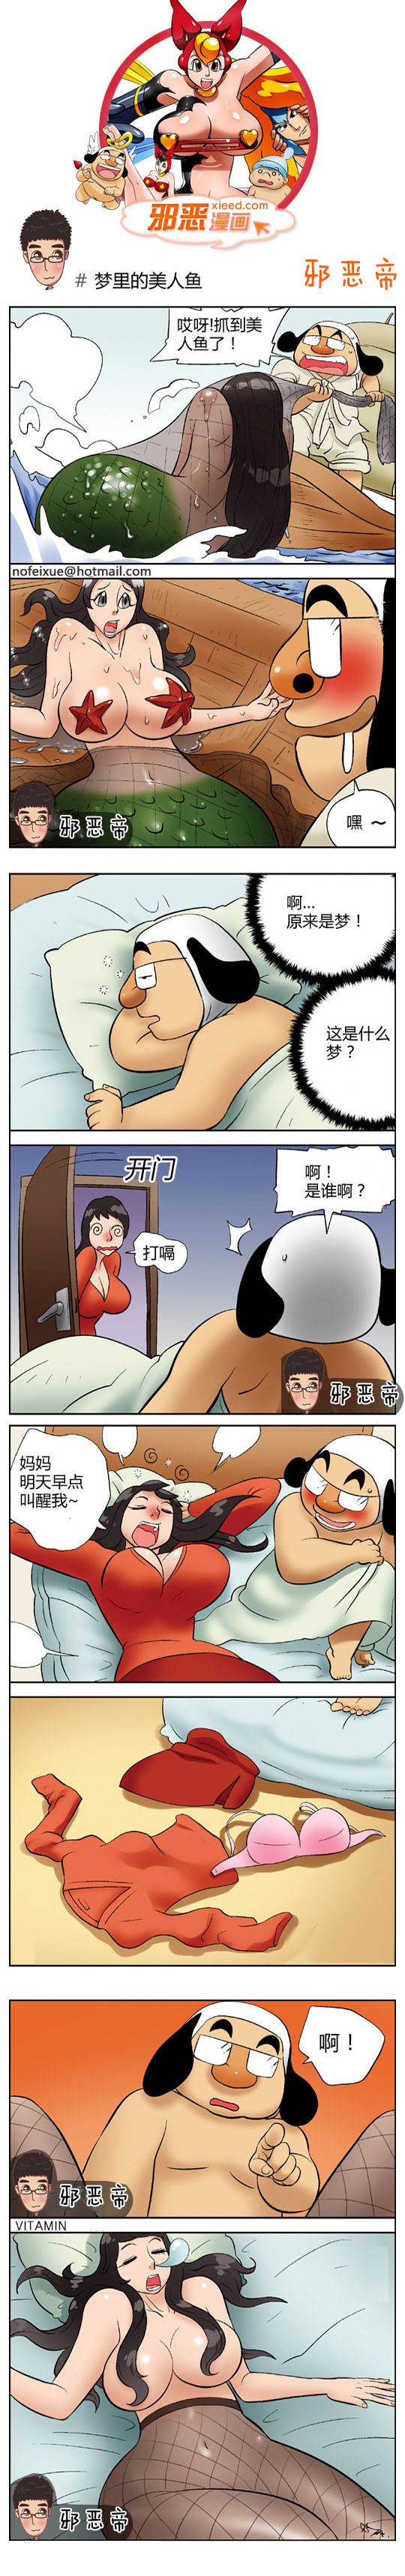 邪恶漫画爆笑囧图第328刊：妻子的欲望